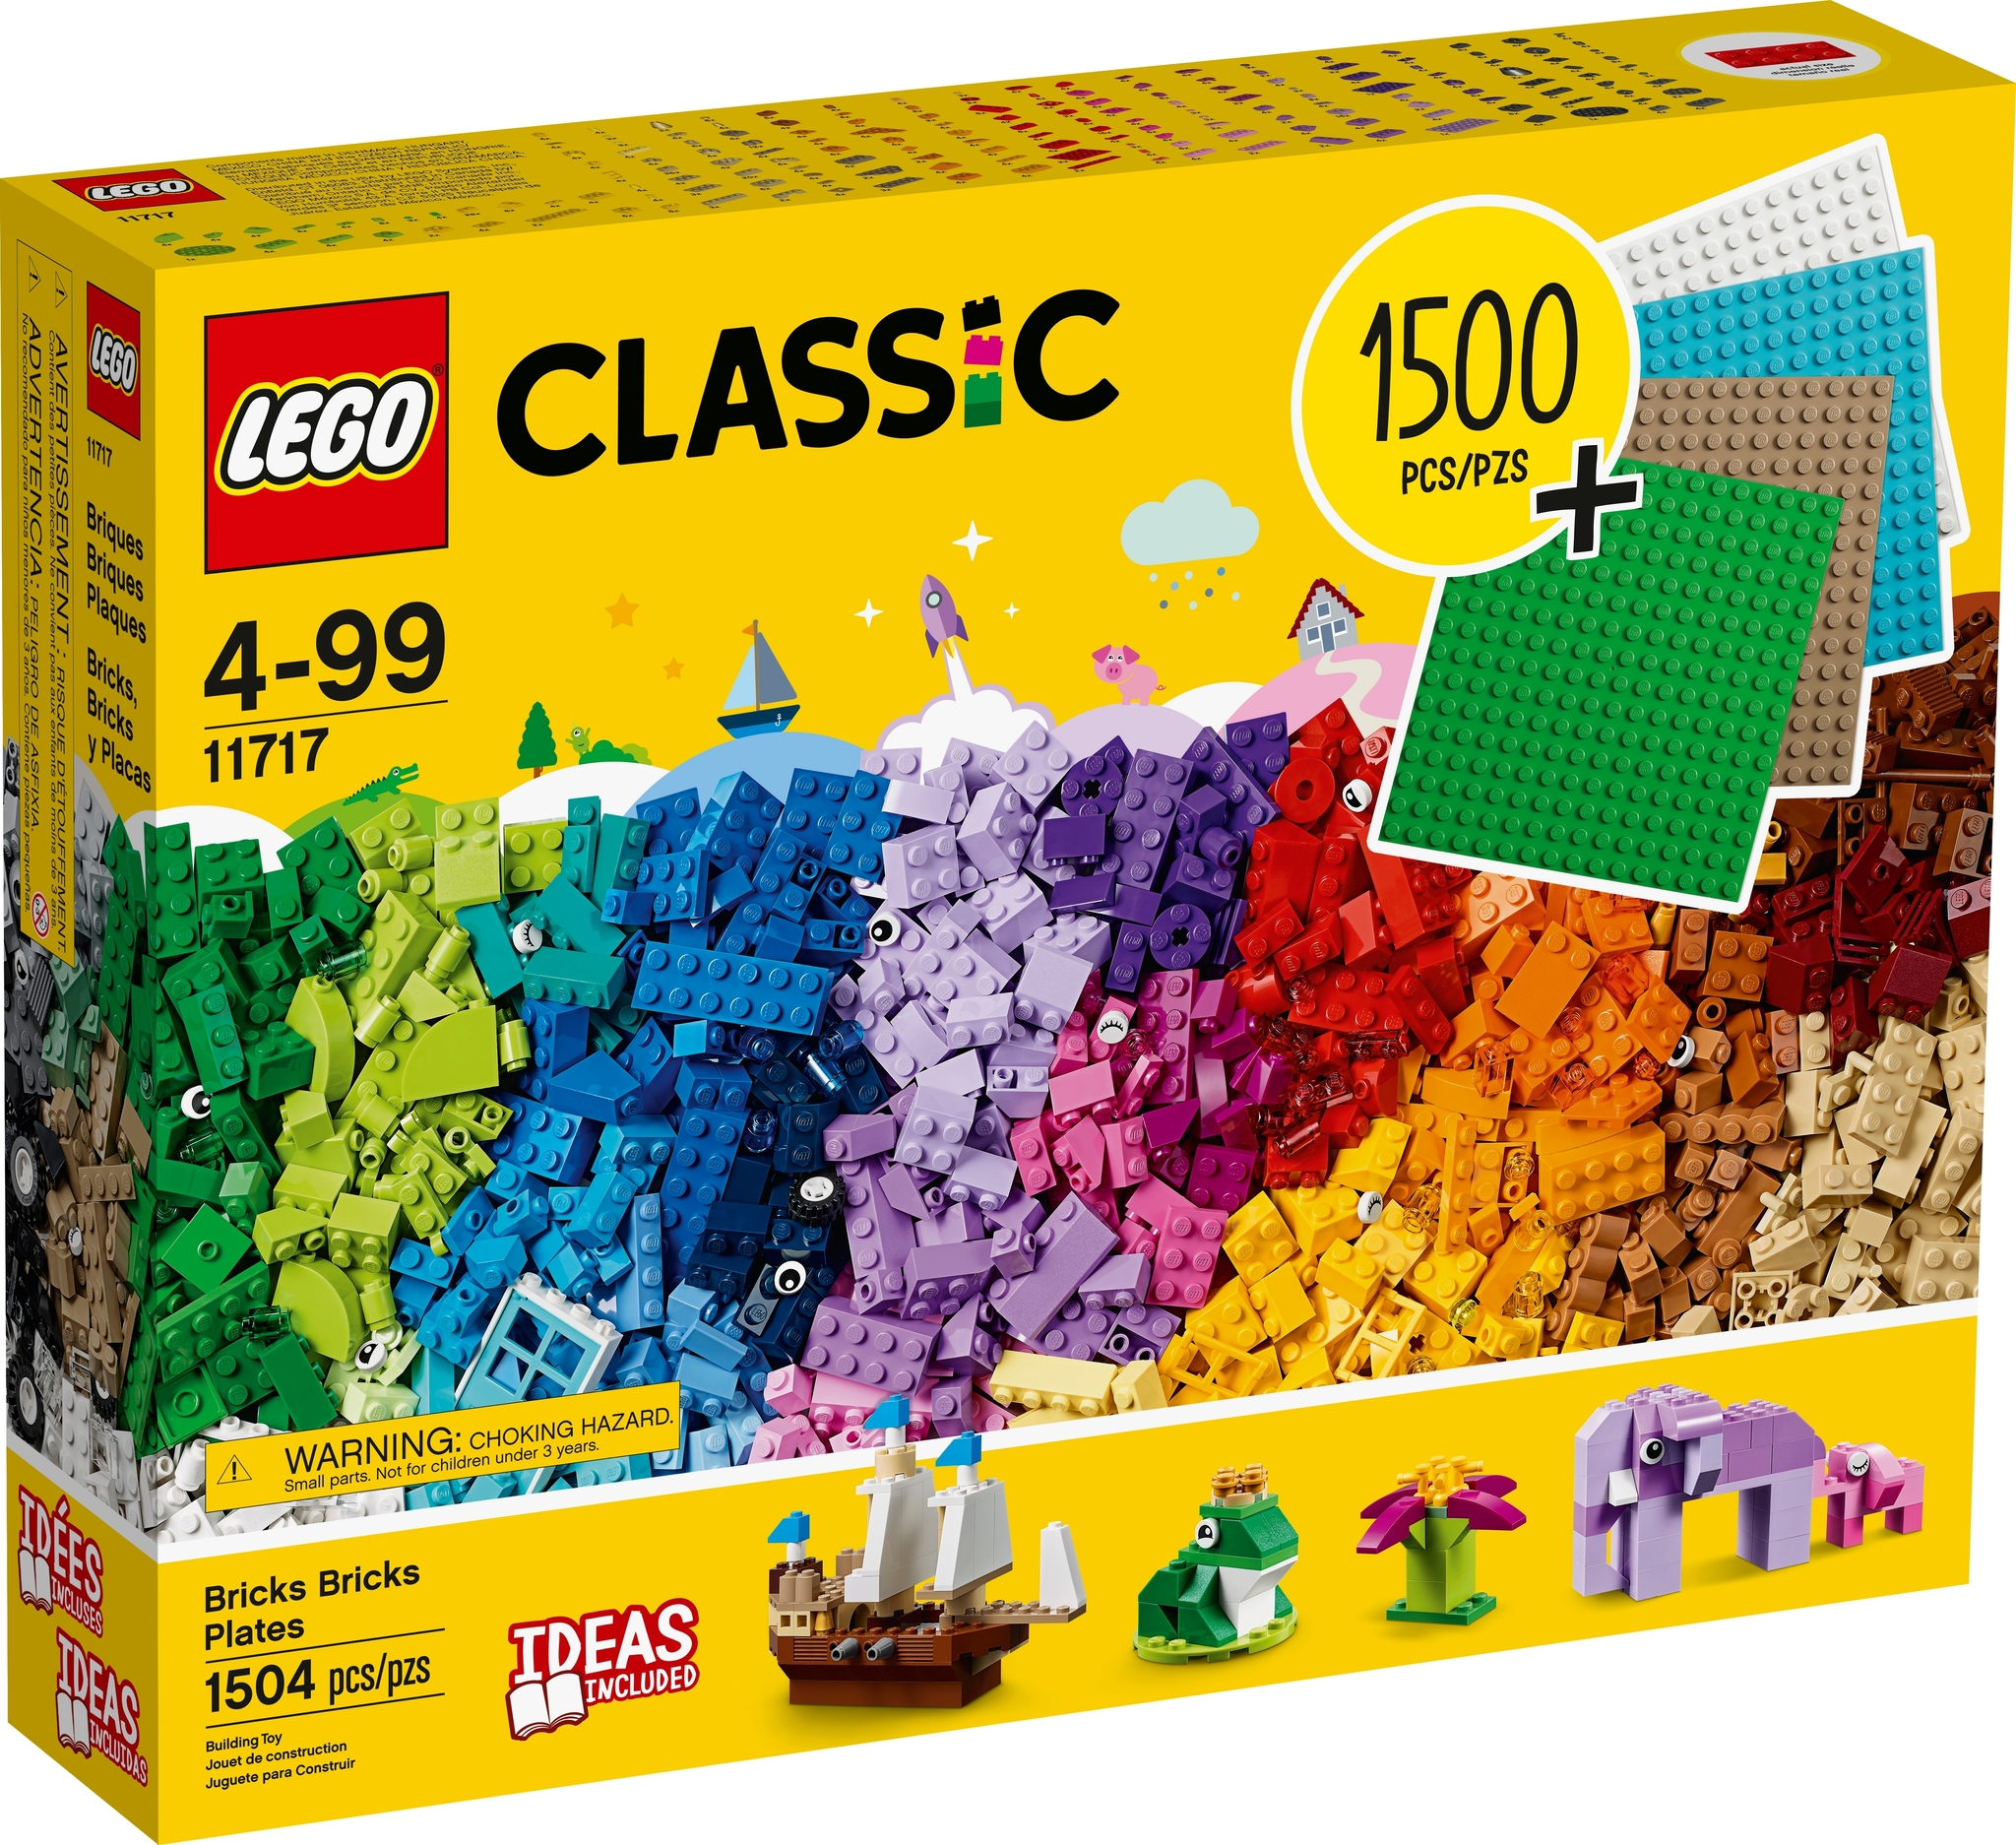 Le migliori offerte sui mattoncini Lego 